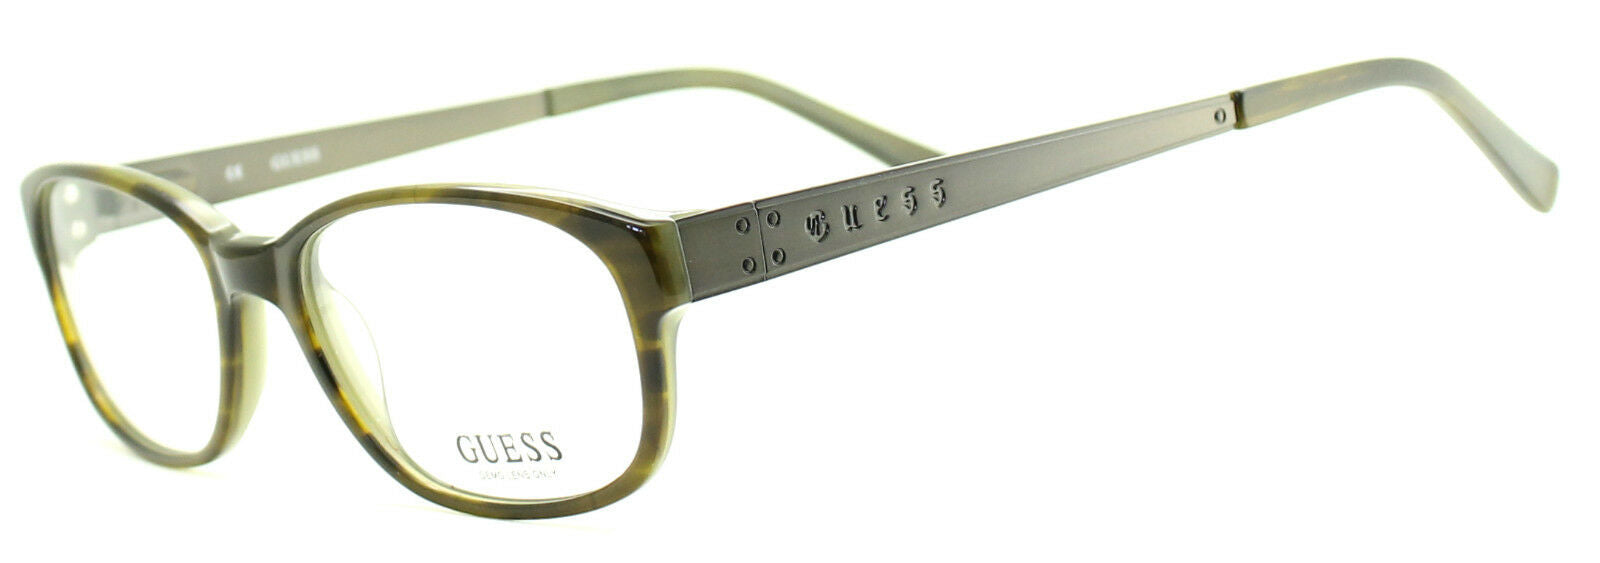 GUESS GU1726 OL Eyewear FRAMES Glasses Eyeglasses RX Optical BNIB New - TRUSTED